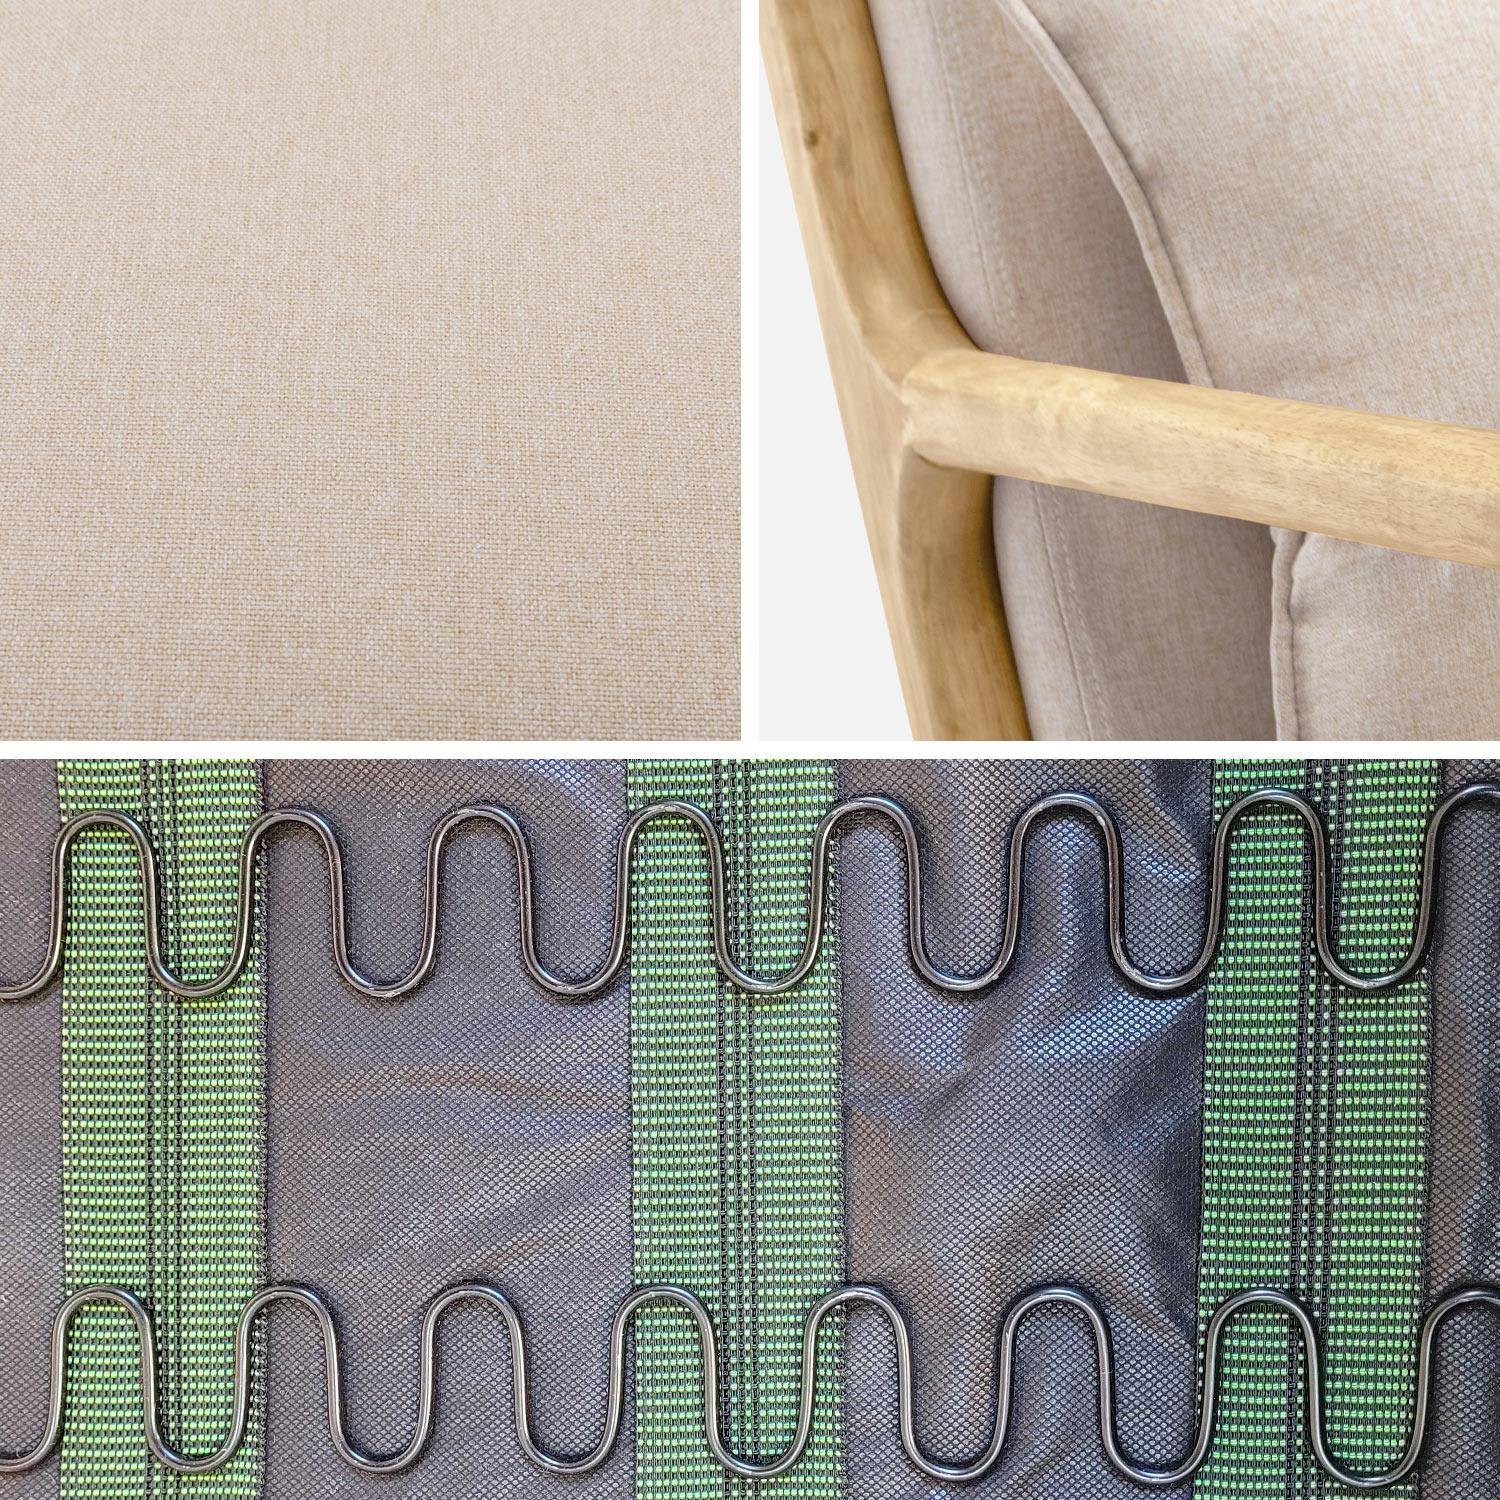 Cadeira de baloiço de design em madeira e tecido, 1 lugar, cadeira de baloiço escandinava, bege Photo6